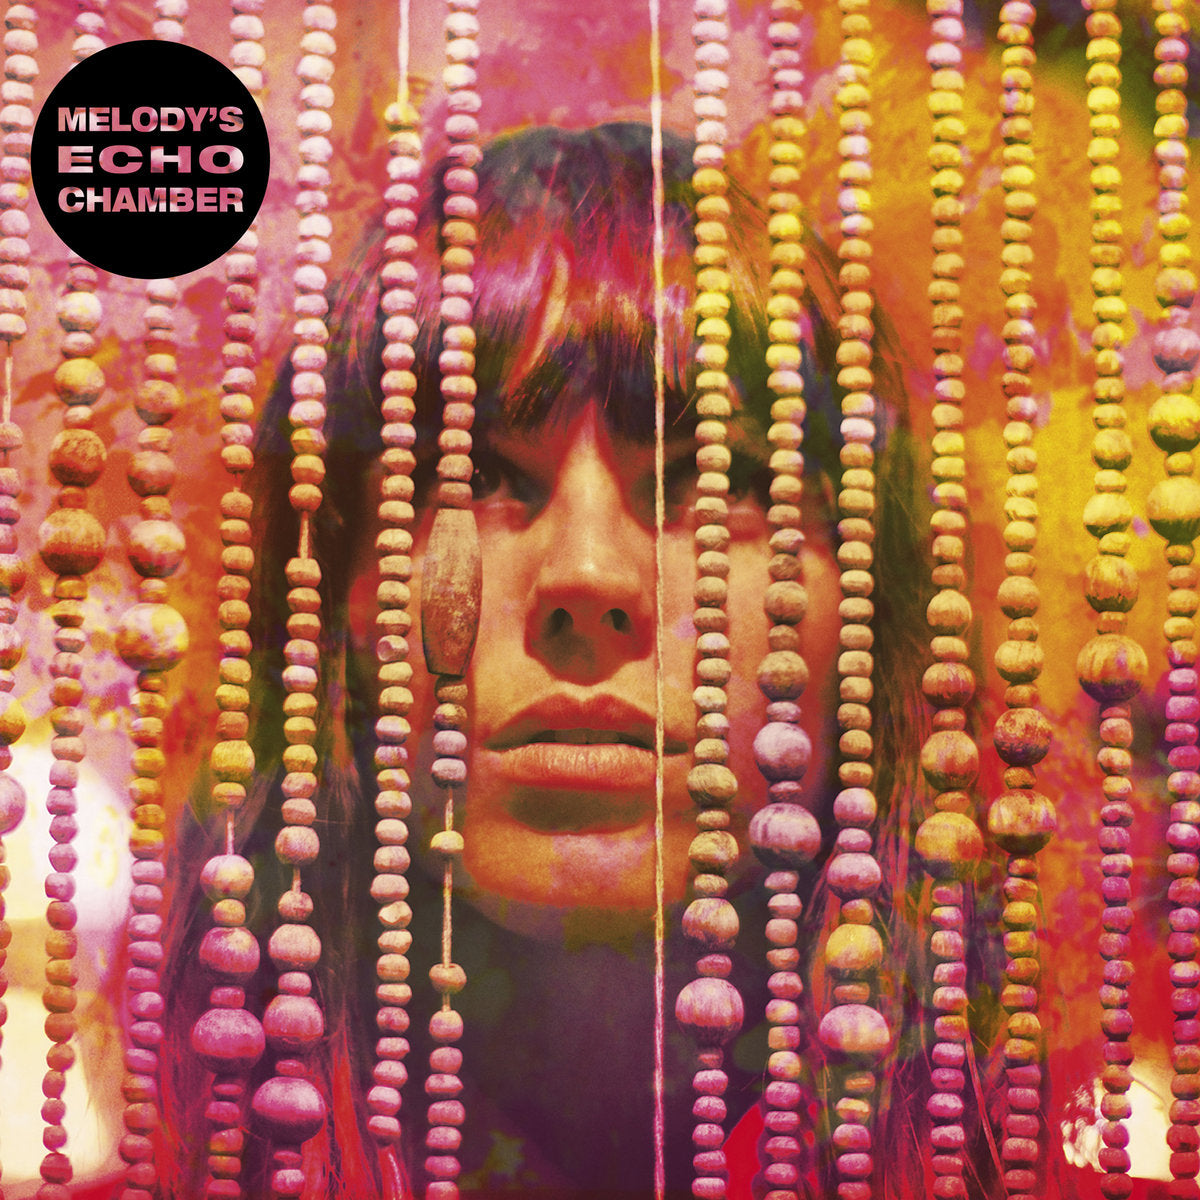 MELODY'S ECHO CHAMBER - Melody's Echo Chamber (10th Anniversary Edition) - 2LP - Transparent Orange Vinyl [SEP 30]